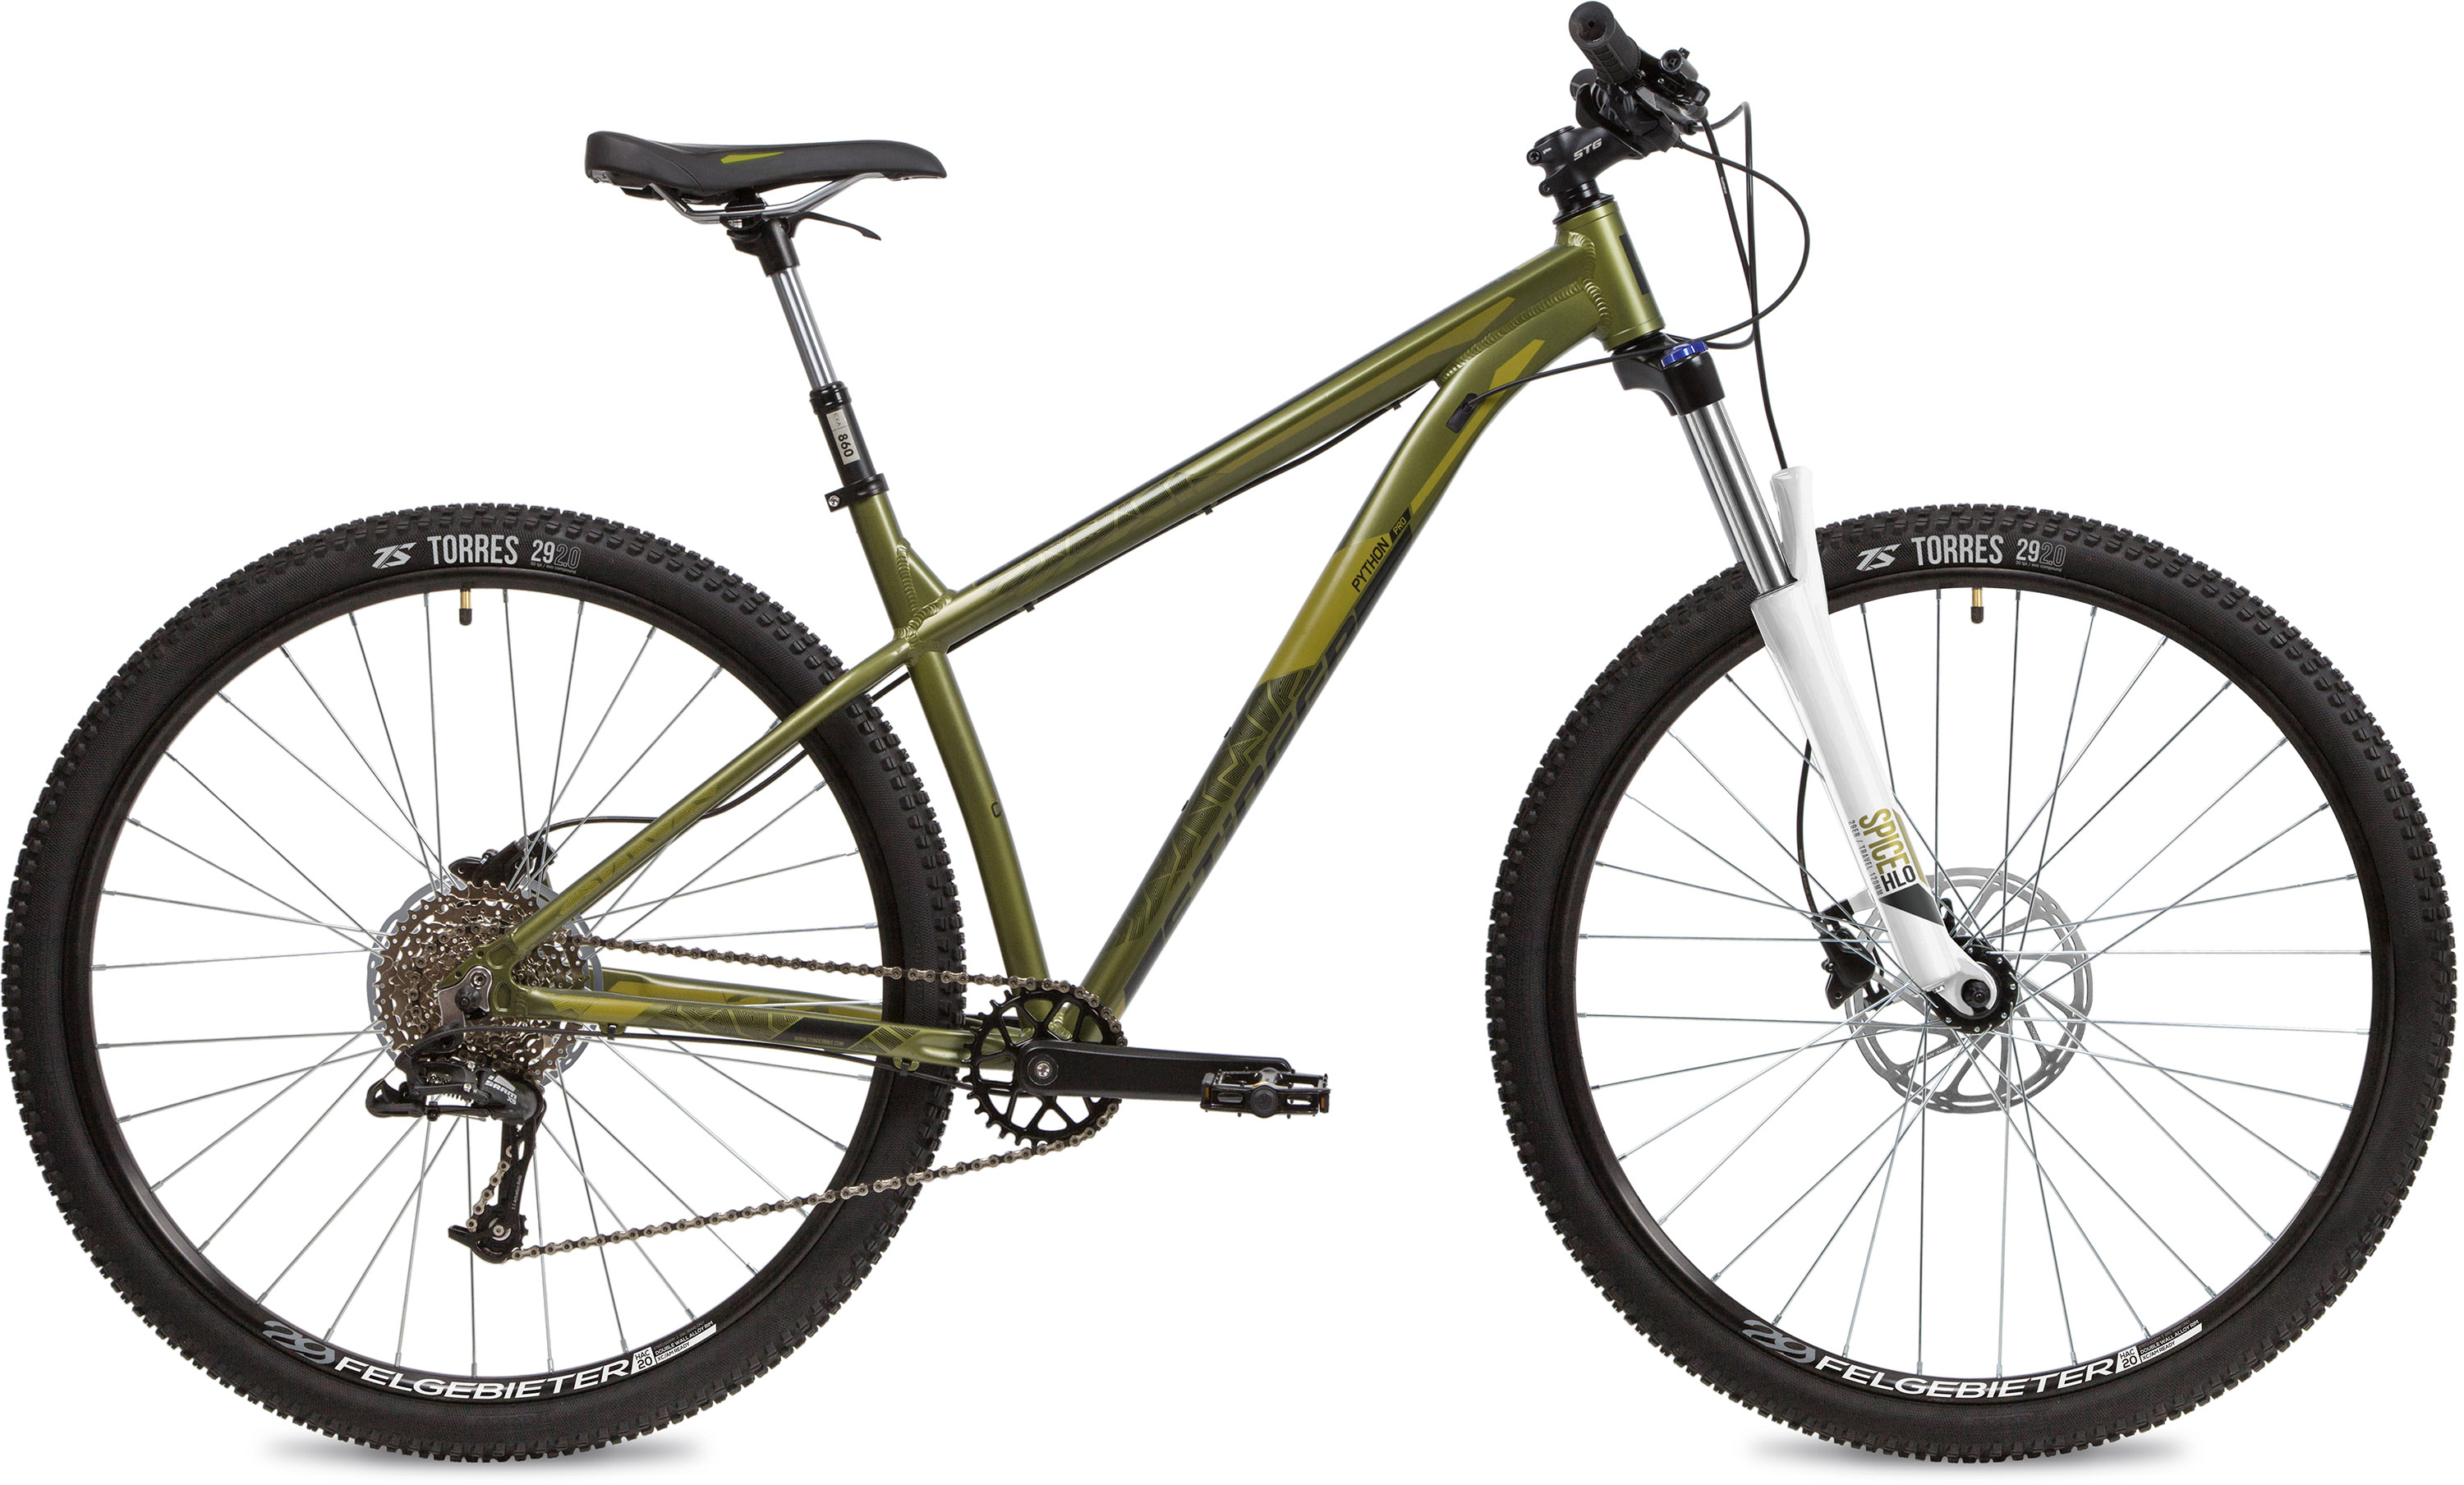  Отзывы о Горном велосипеде Stinger Python Pro 29 2020